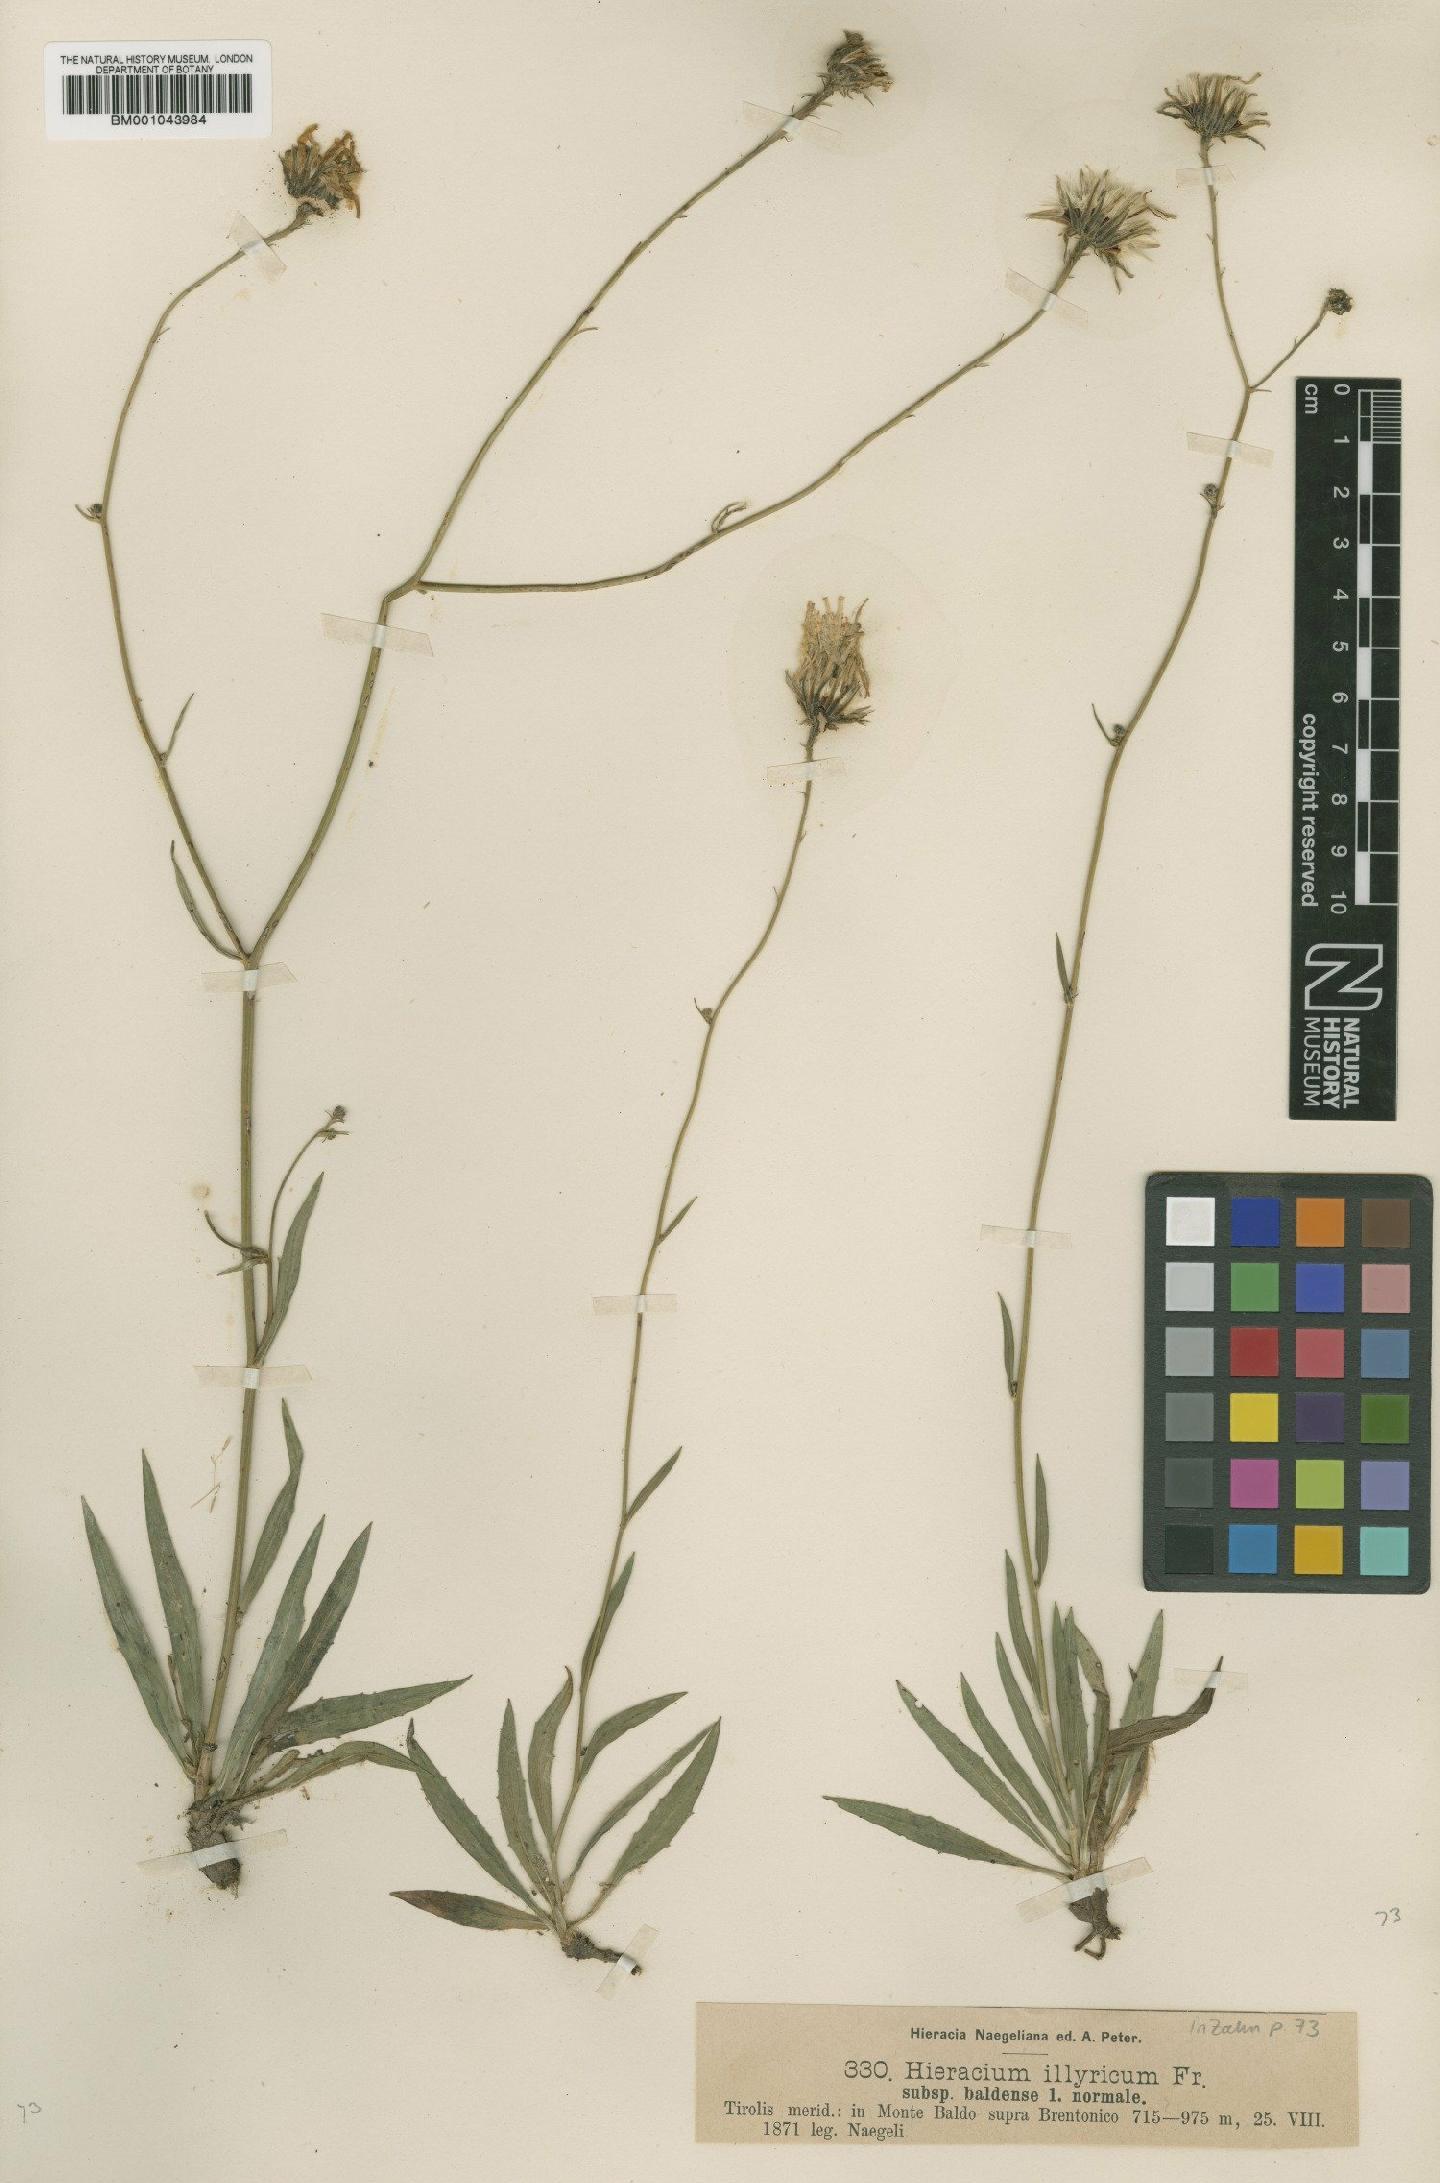 To NHMUK collection (Hieracium illyricum subsp. baldense Nägeli & Peter; Type; NHMUK:ecatalogue:2395327)